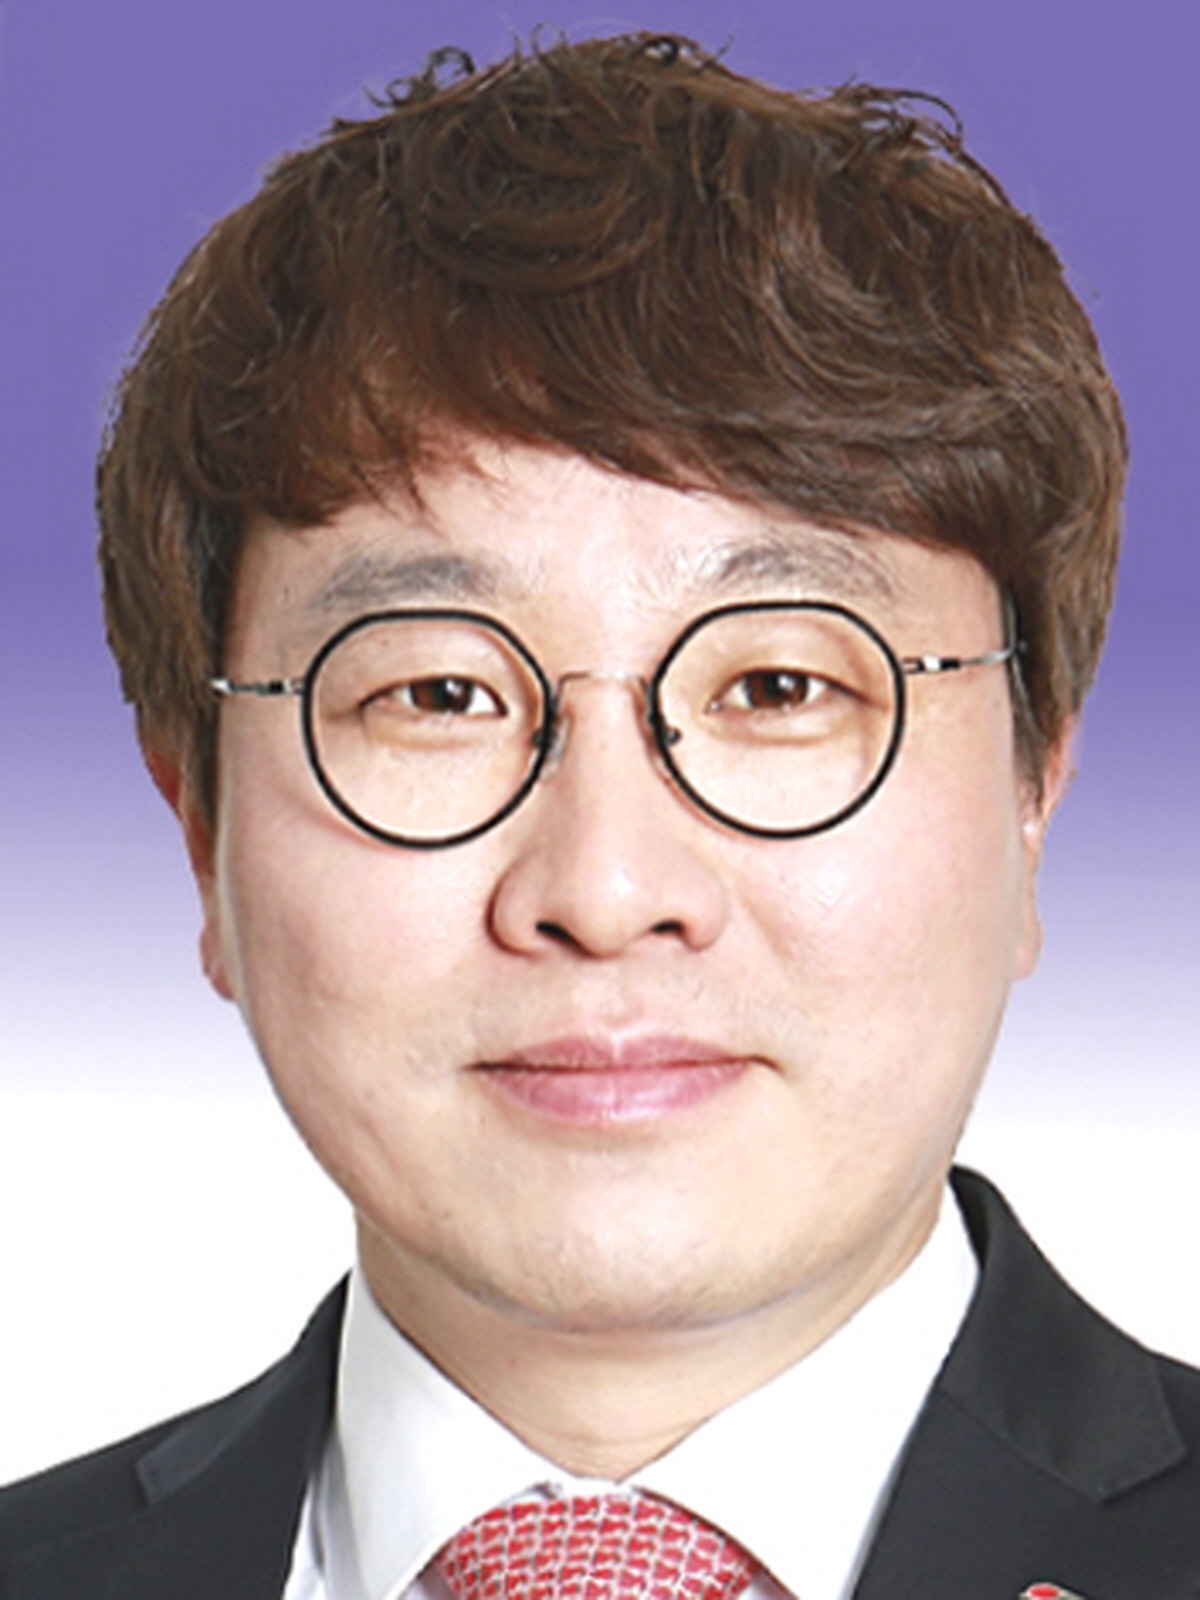 조용진 경북도의원, <br>「경북 중소도시 어린이 의료서비스 개선을 위한 정책토론회」